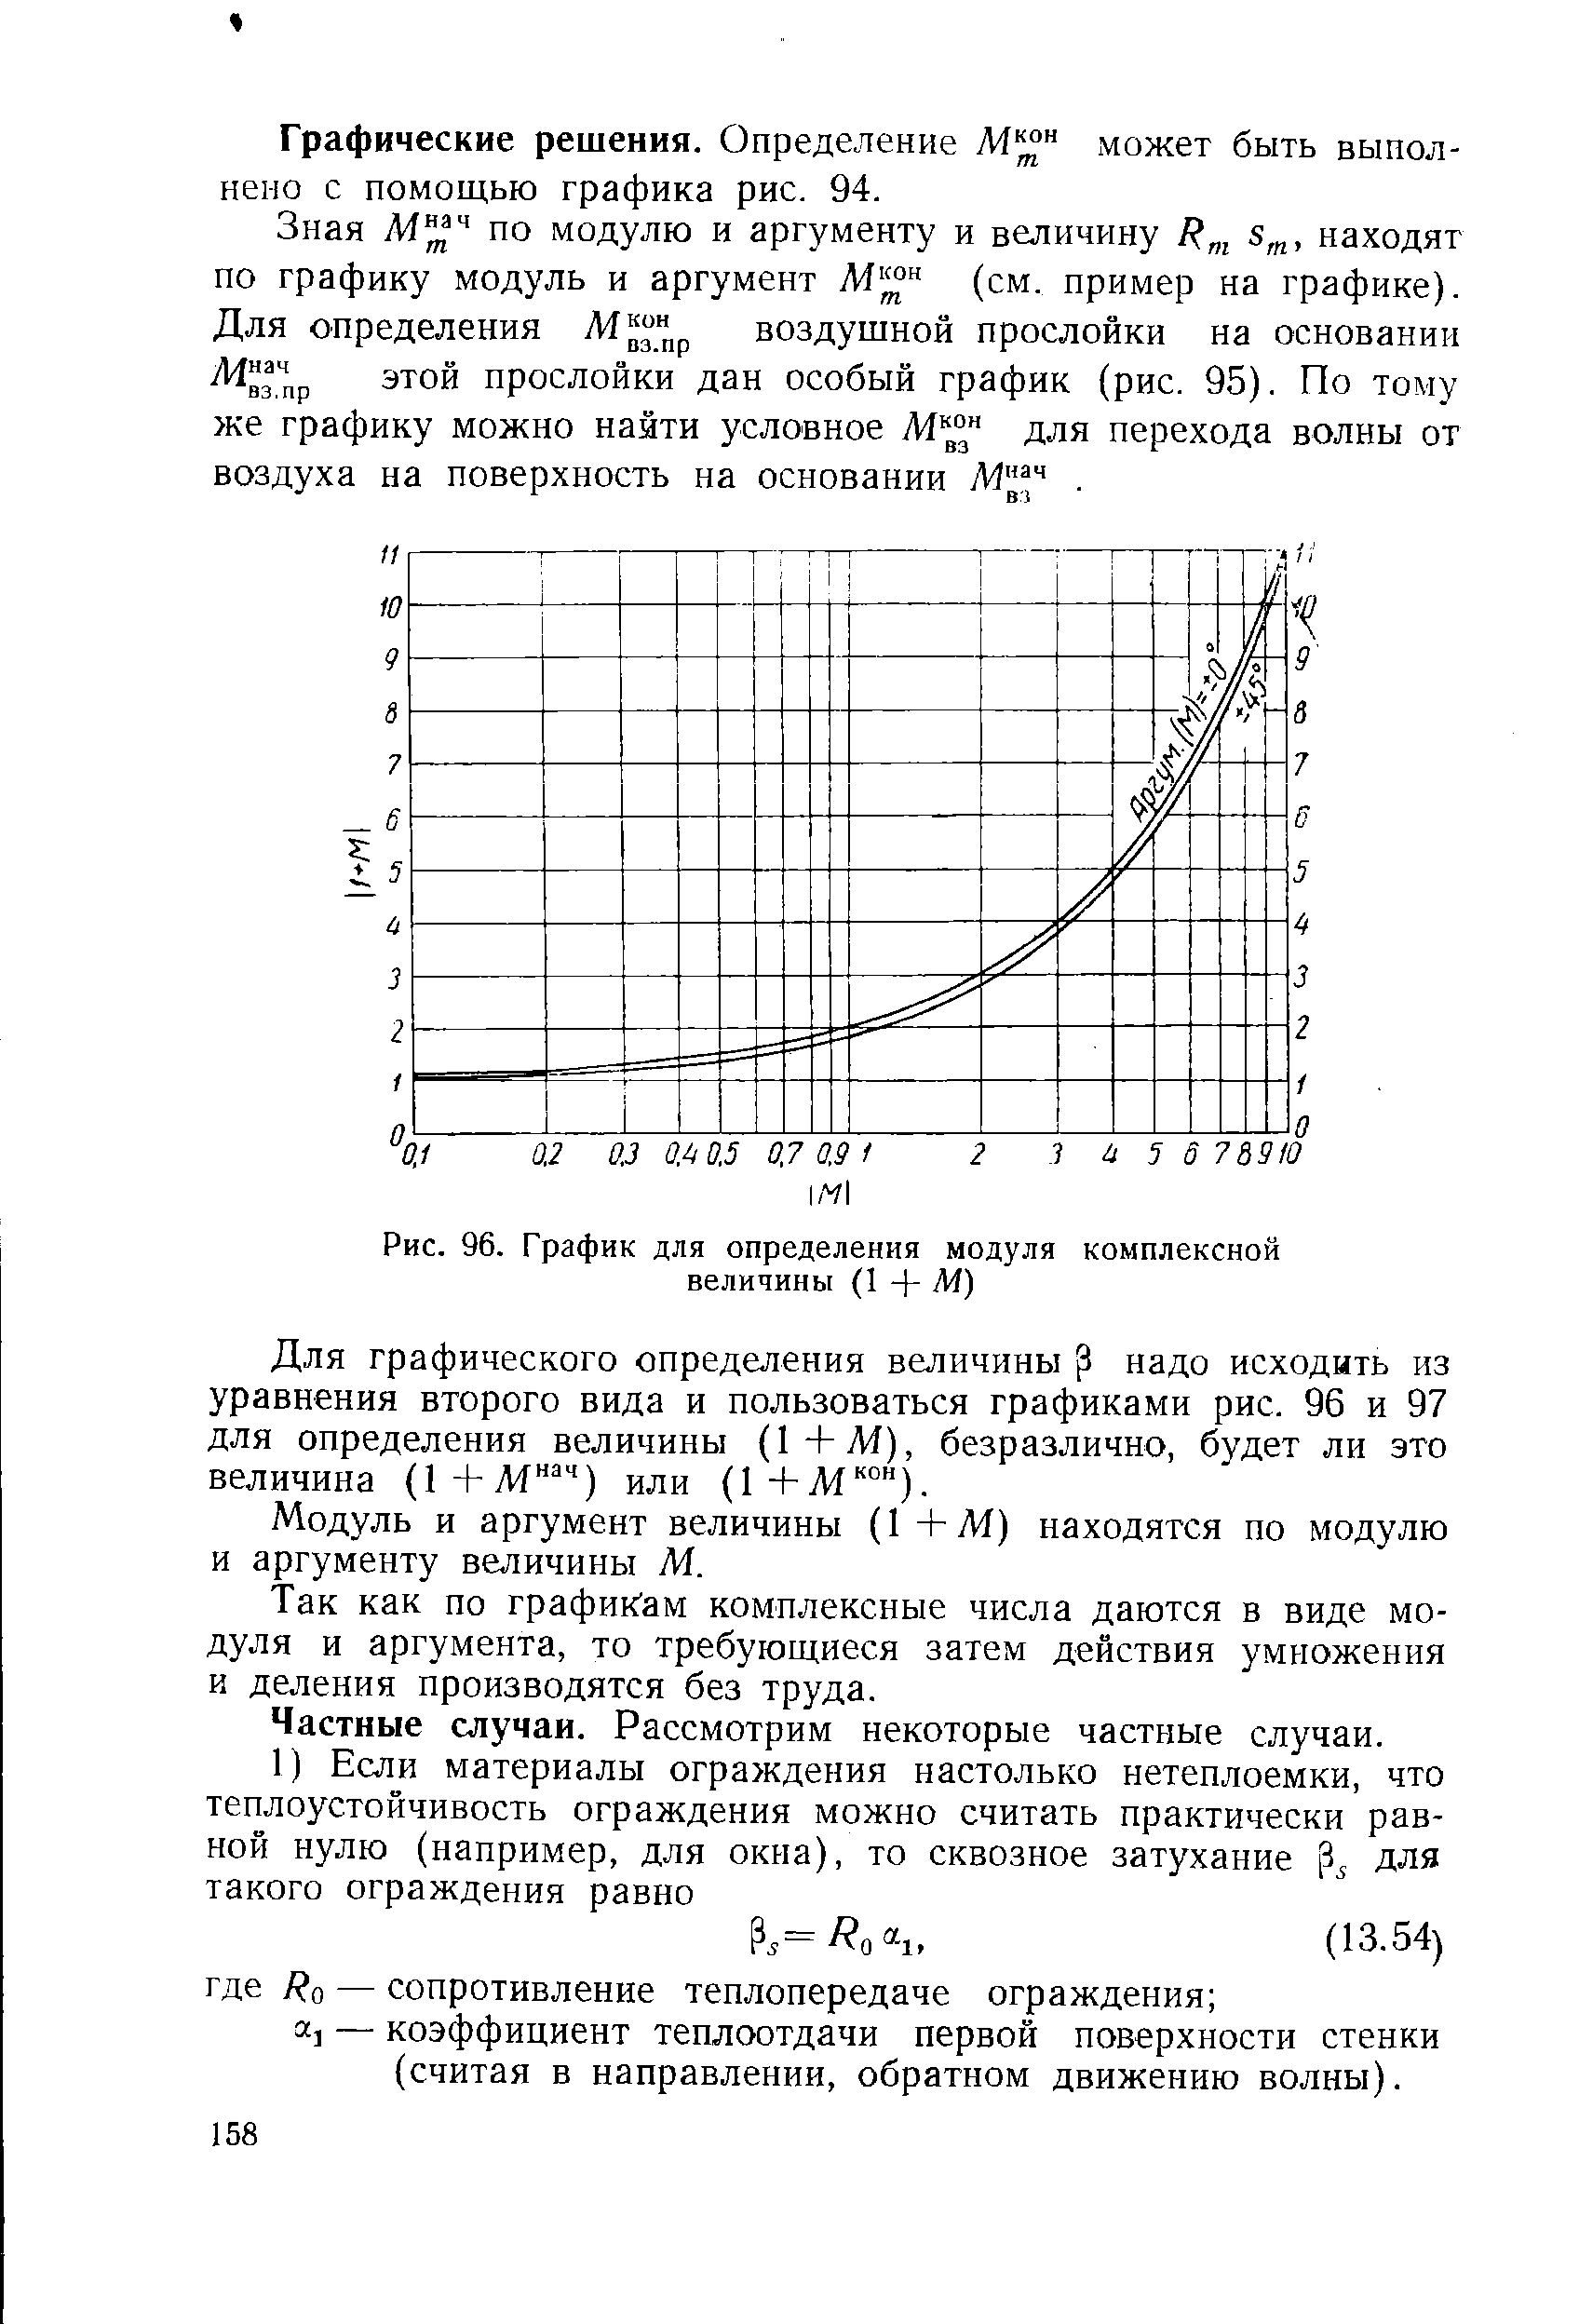 Рис. 96. График для определения модуля комплексной величины (1 + М)
